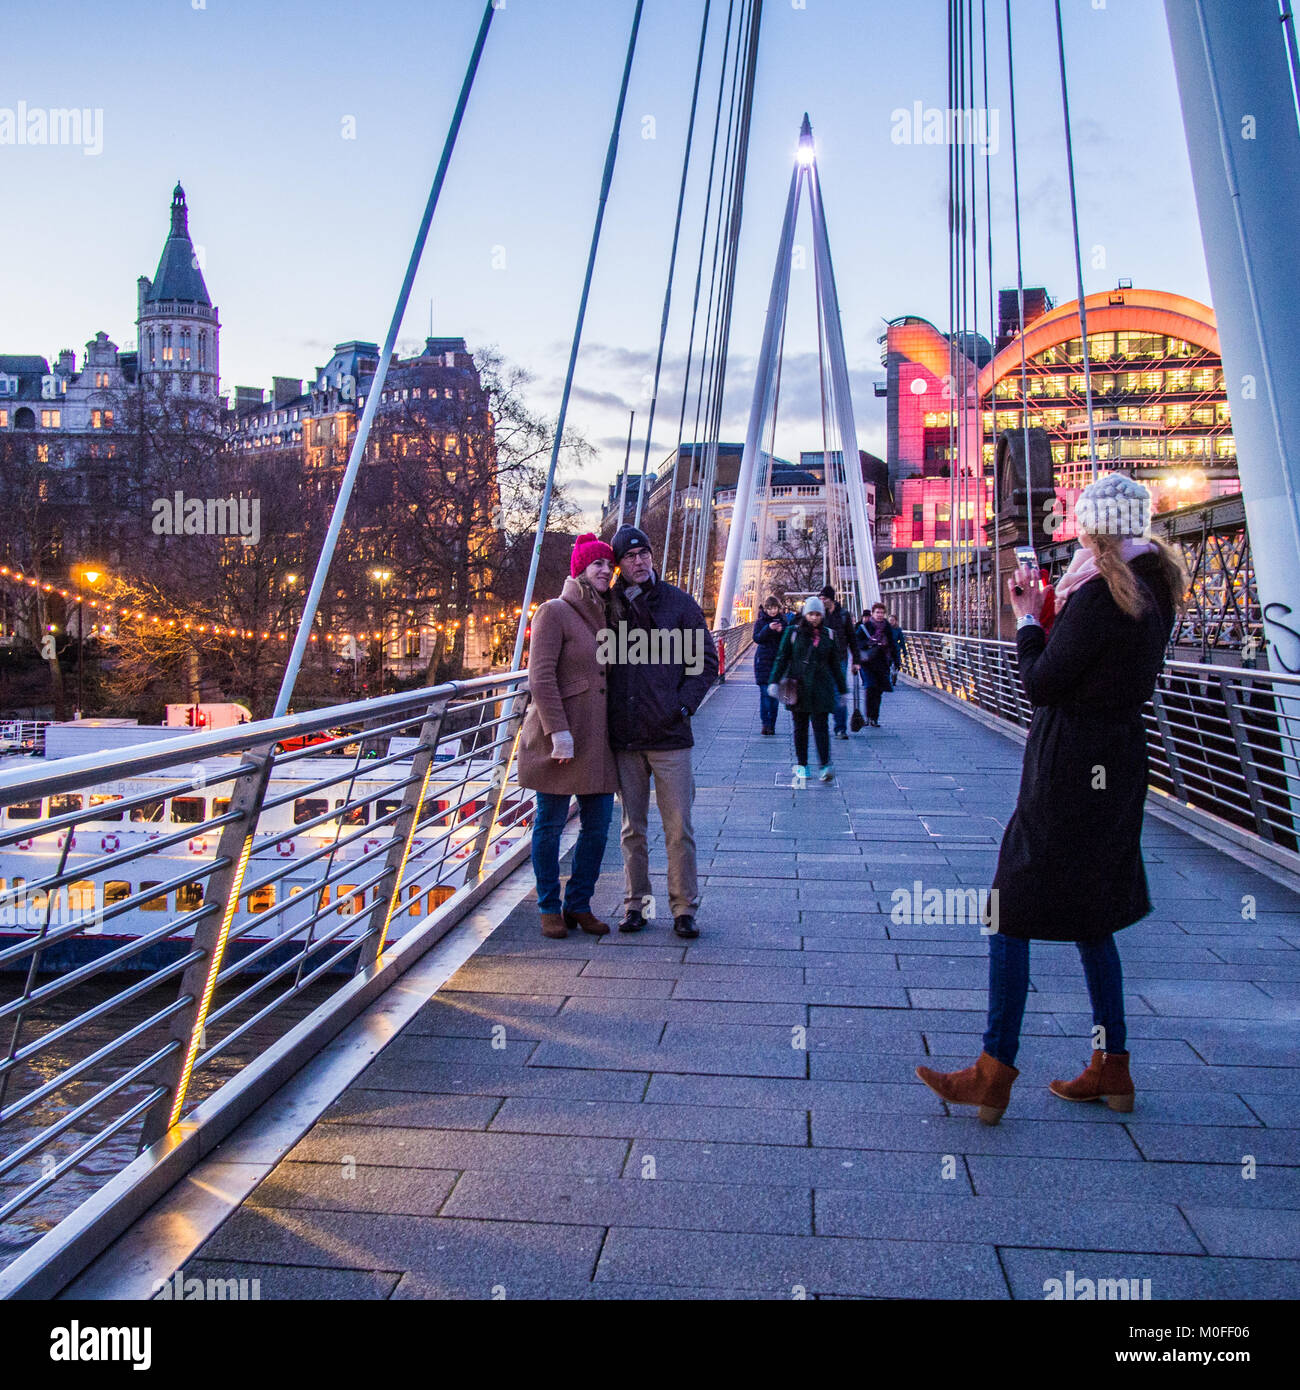 Leute für ein Foto auf Golden Jubilee Bridge London posieren. Hungerford Eisenbahn Brücke ist auf der rechten und die Charing Cross Station im Hintergrund. Stockfoto